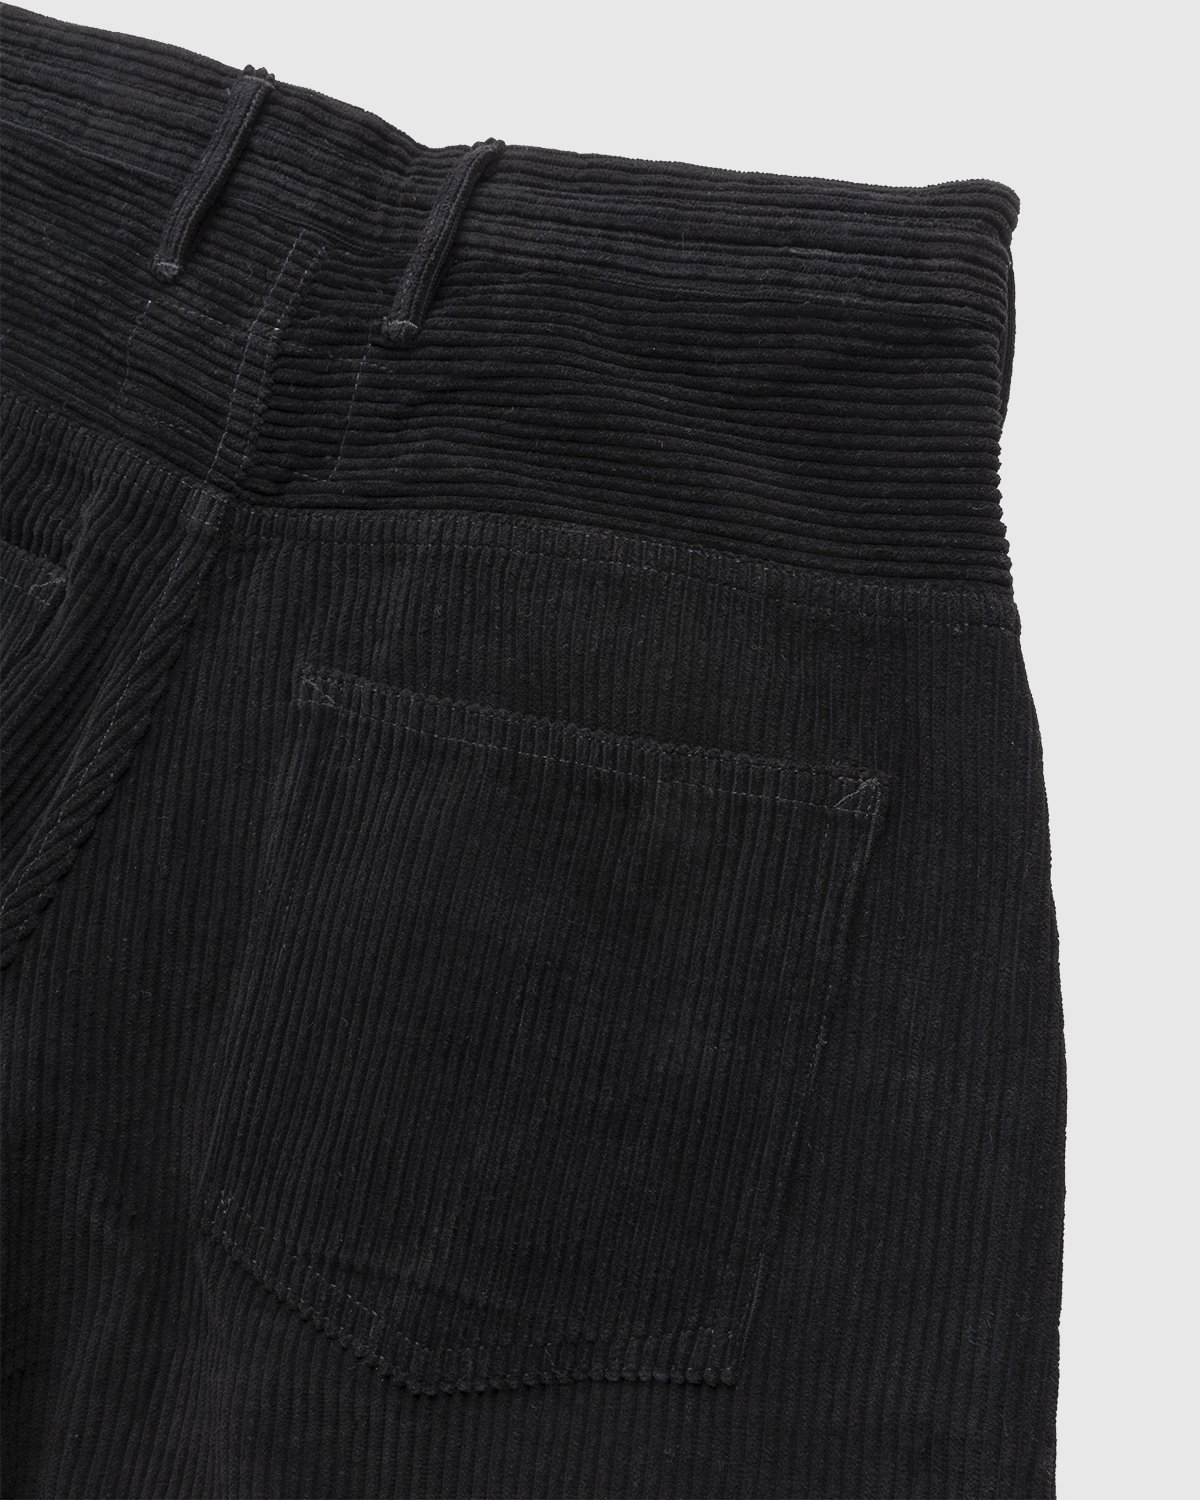 Story mfg. - Corduroy Lush Pants Iron - Clothing - Black - Image 3